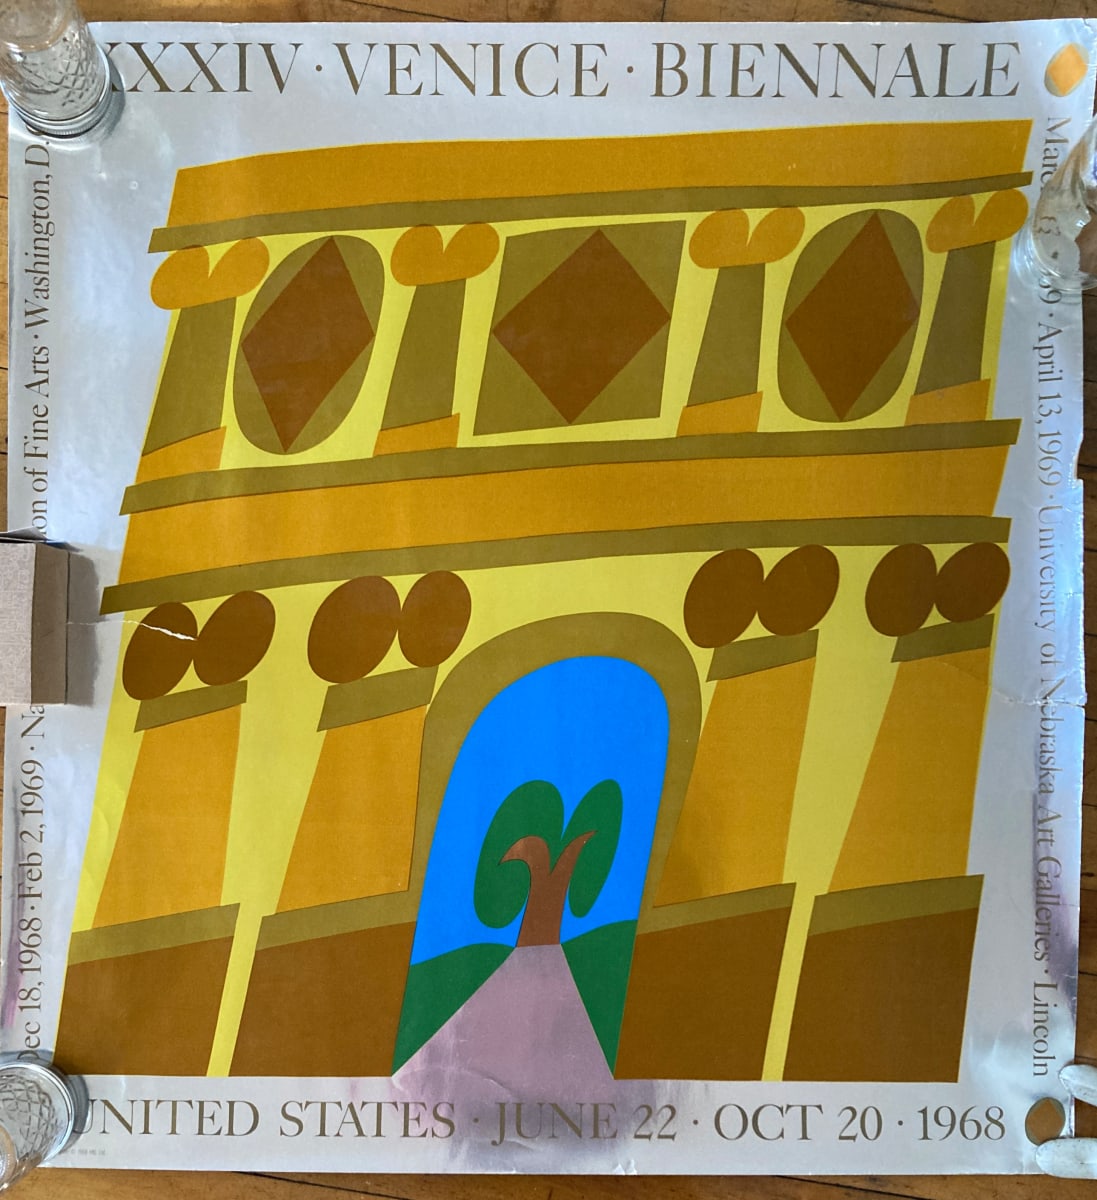 XXXIV Venice Biennale by Venice Bienalle 